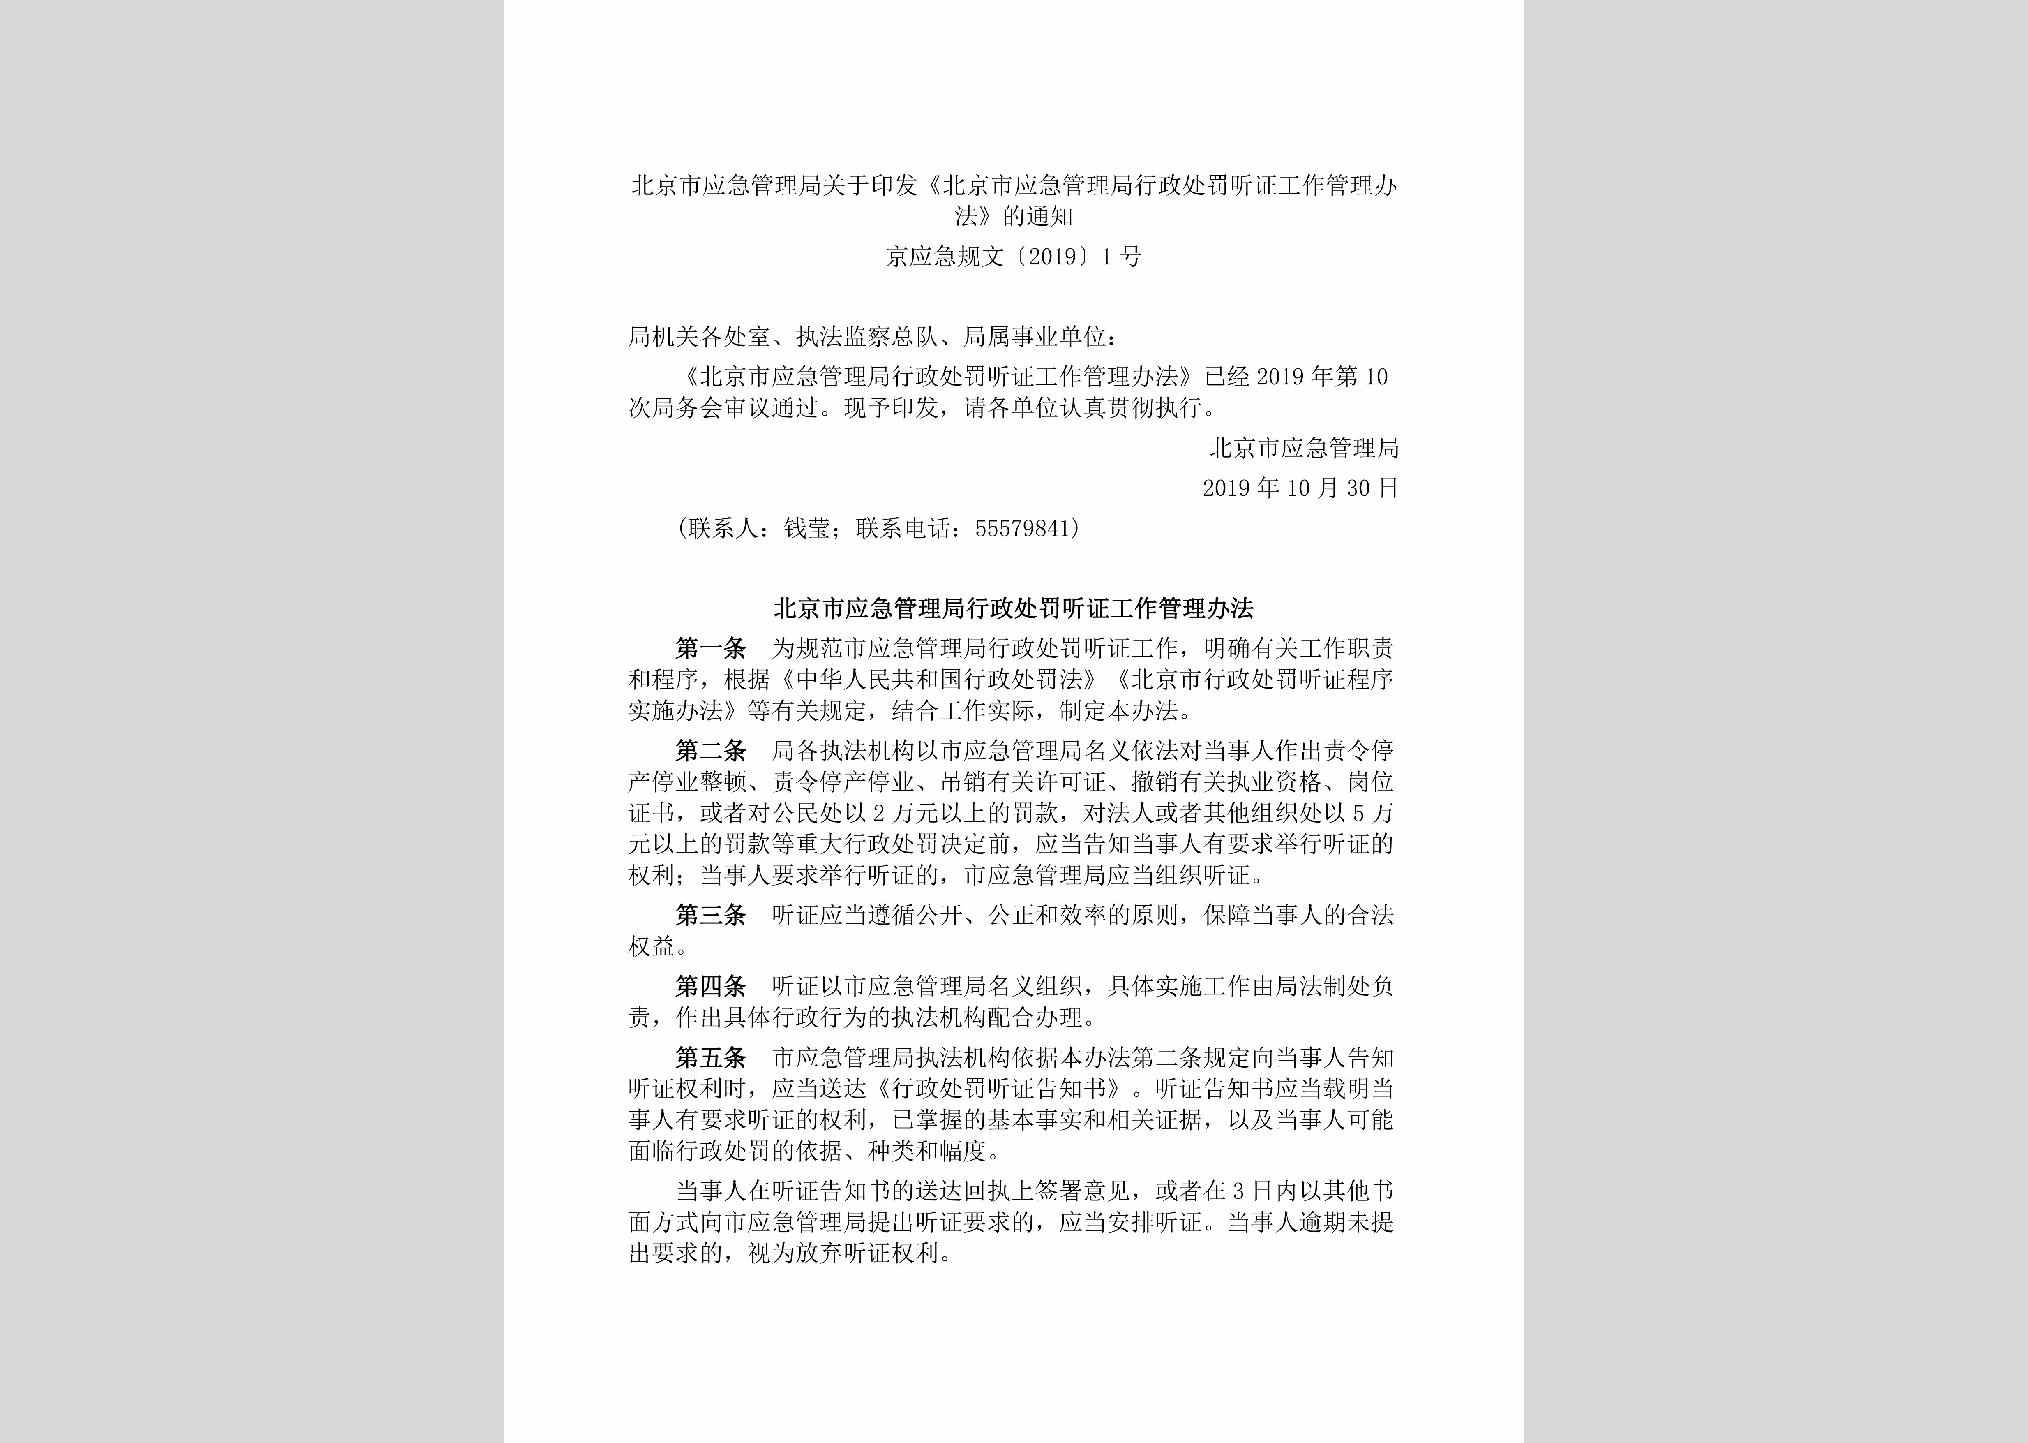 京应急规文[2019]1号：北京市应急管理局关于印发《北京市应急管理局行政处罚听证工作管理办法》的通知